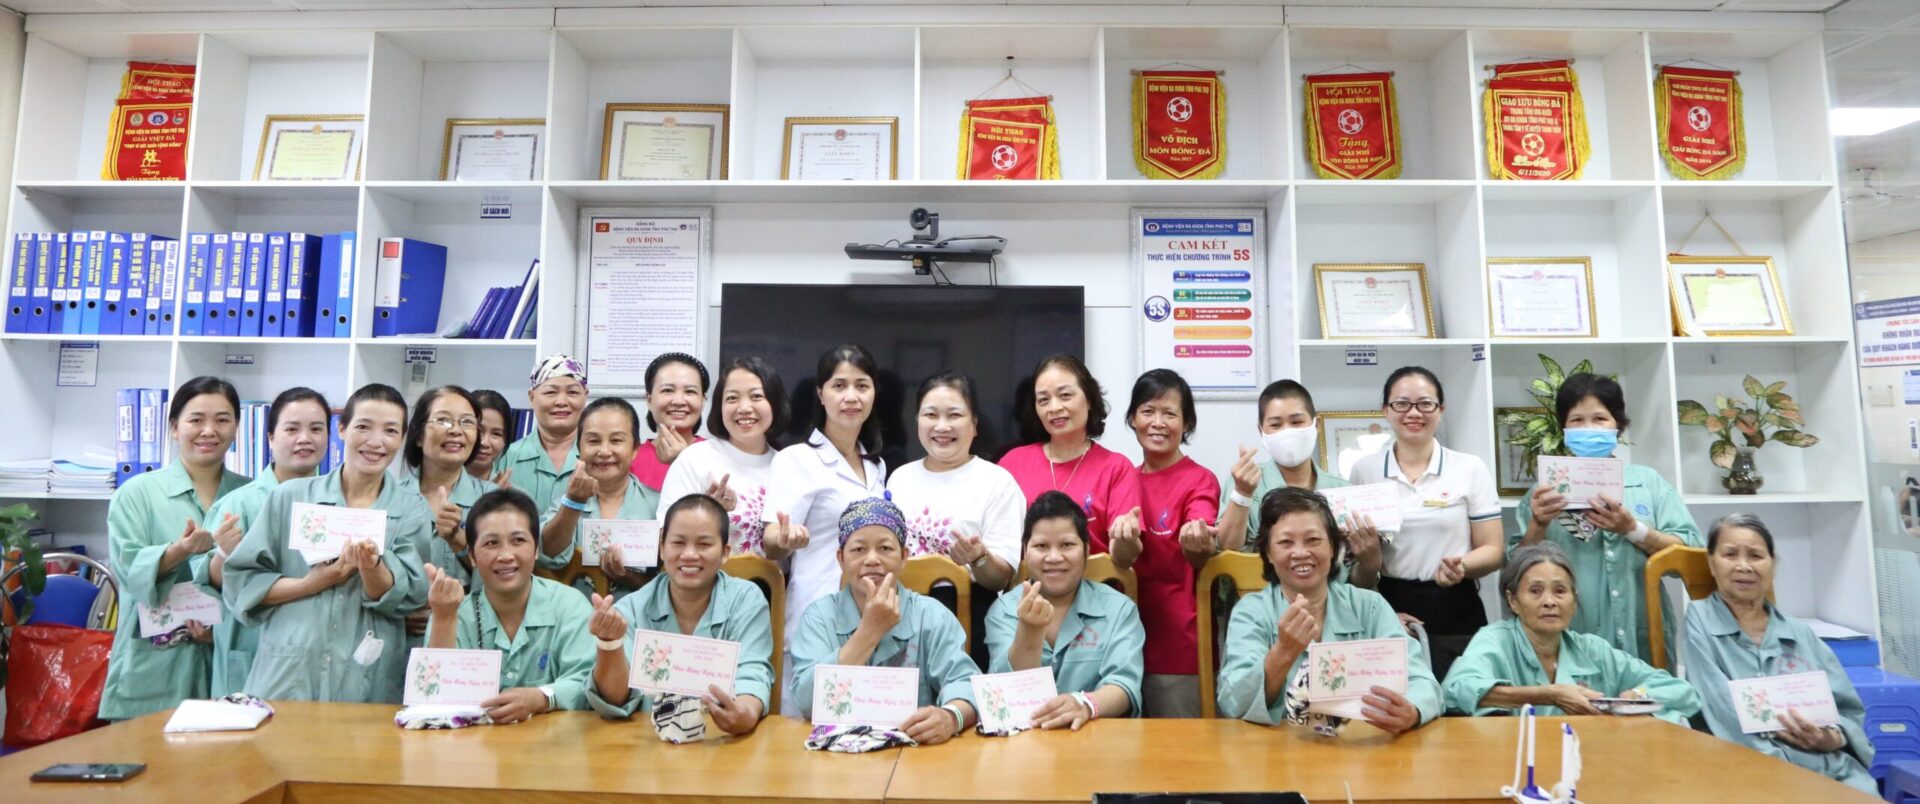 CLB Phụ nữ Kiên cường Phú Thọ trao tặng quà cho người bệnh nữ mắc ung thư vú đang điều trị tại BVĐK tỉnh Phú Thọ